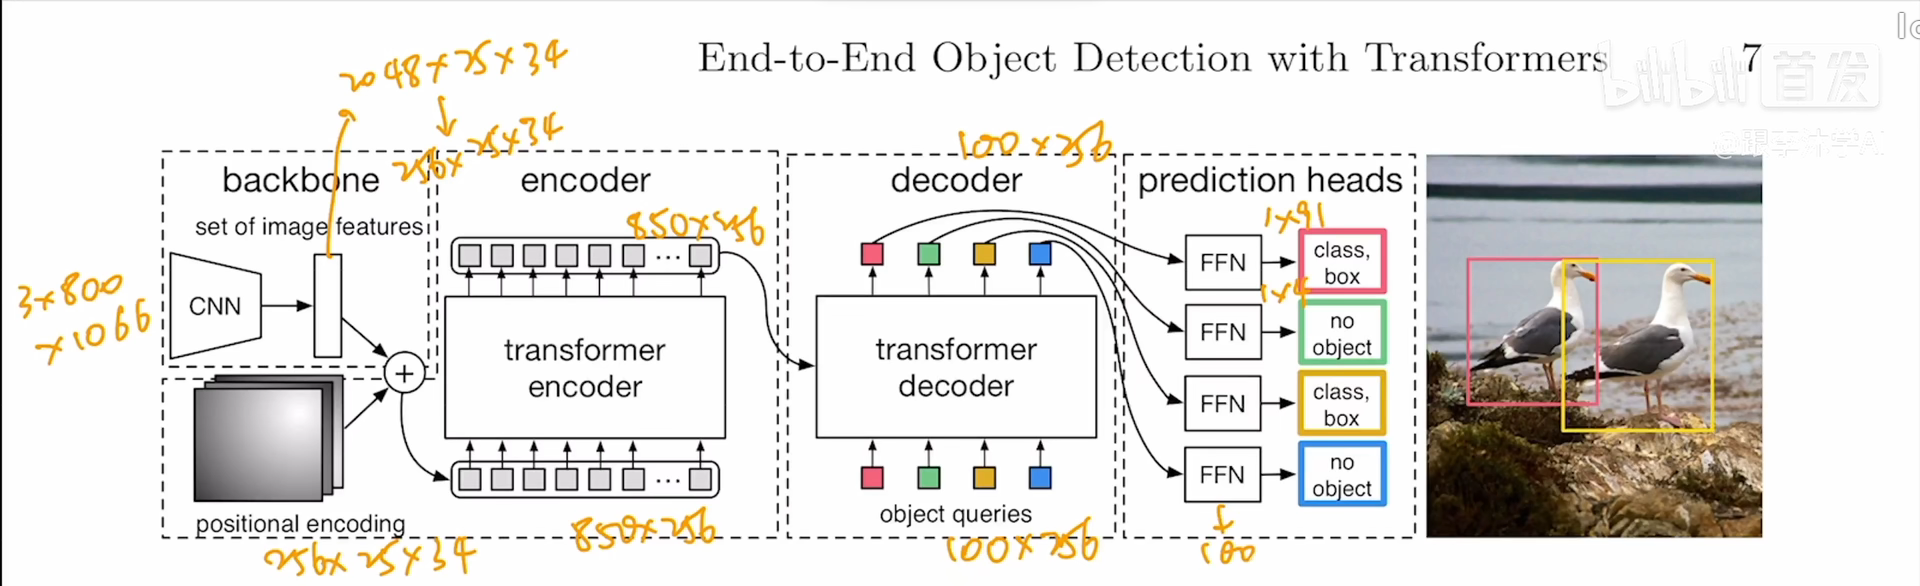 目标检测DETR：End-to-End Object Detection with Transformers